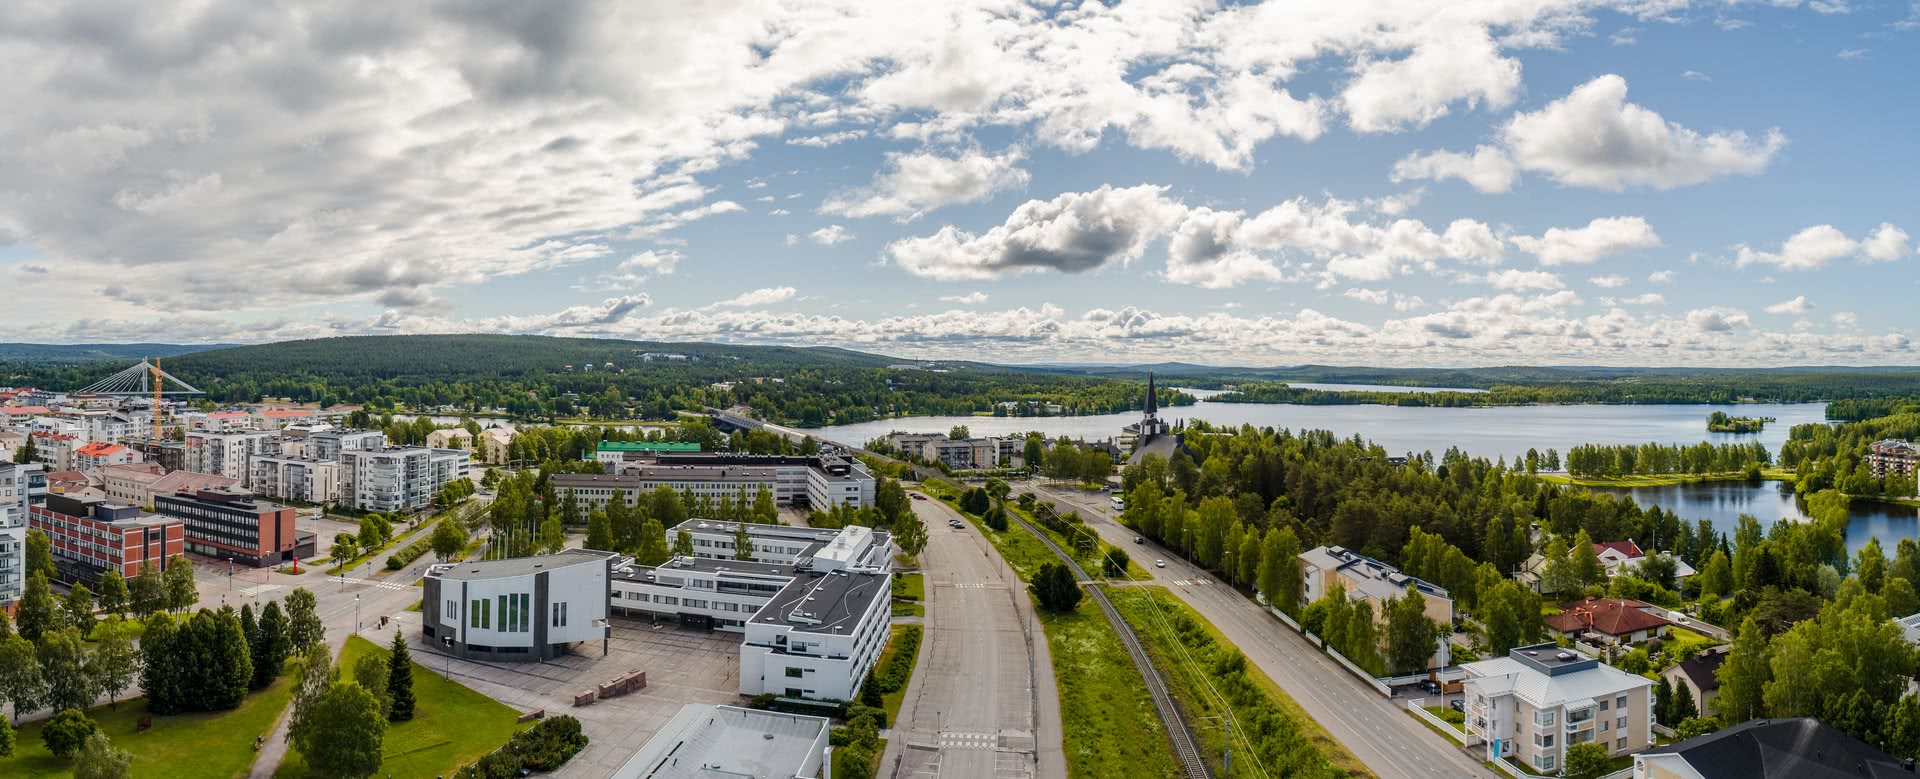 Coverbild von Rovaniemi